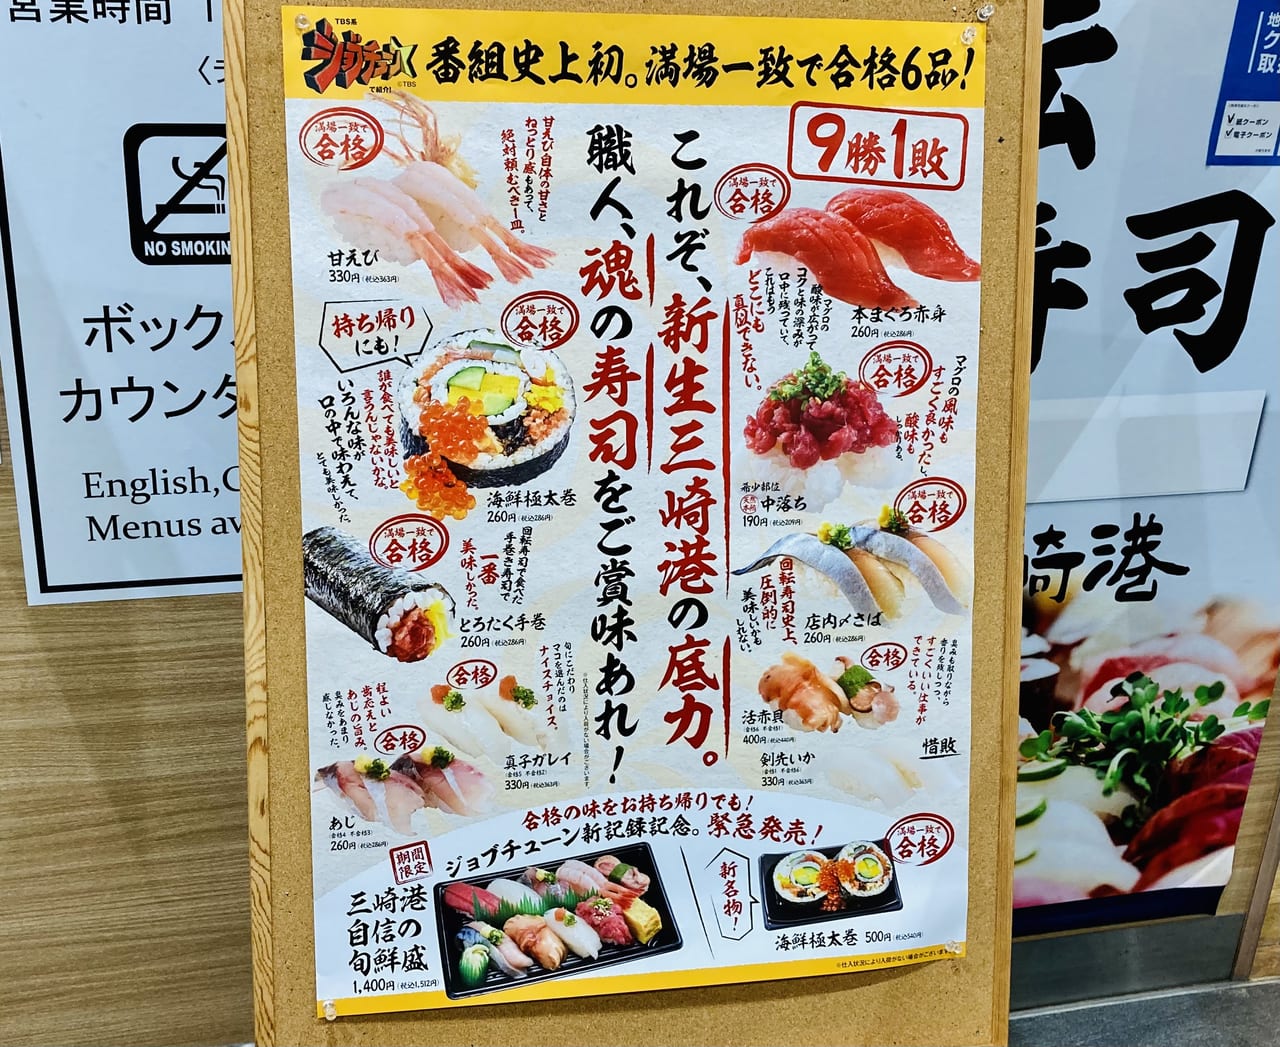 misakiko menu